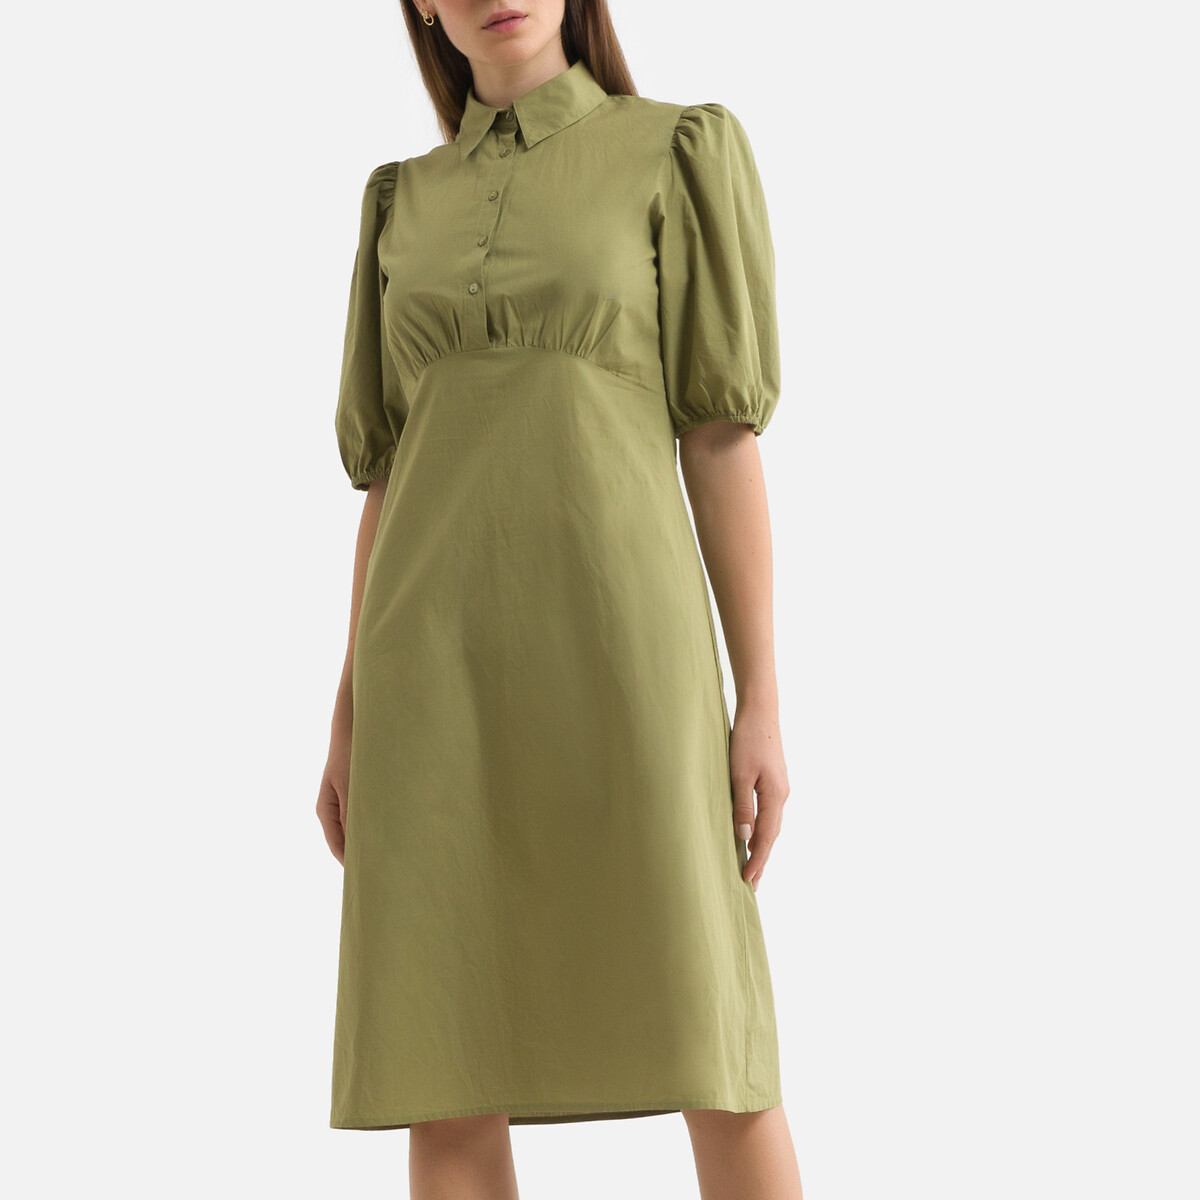 Платье-миди BA&SH С короткими рукавами PAME 1(S) зеленый, размер 1(S) С короткими рукавами PAME 1(S) зеленый - фото 2